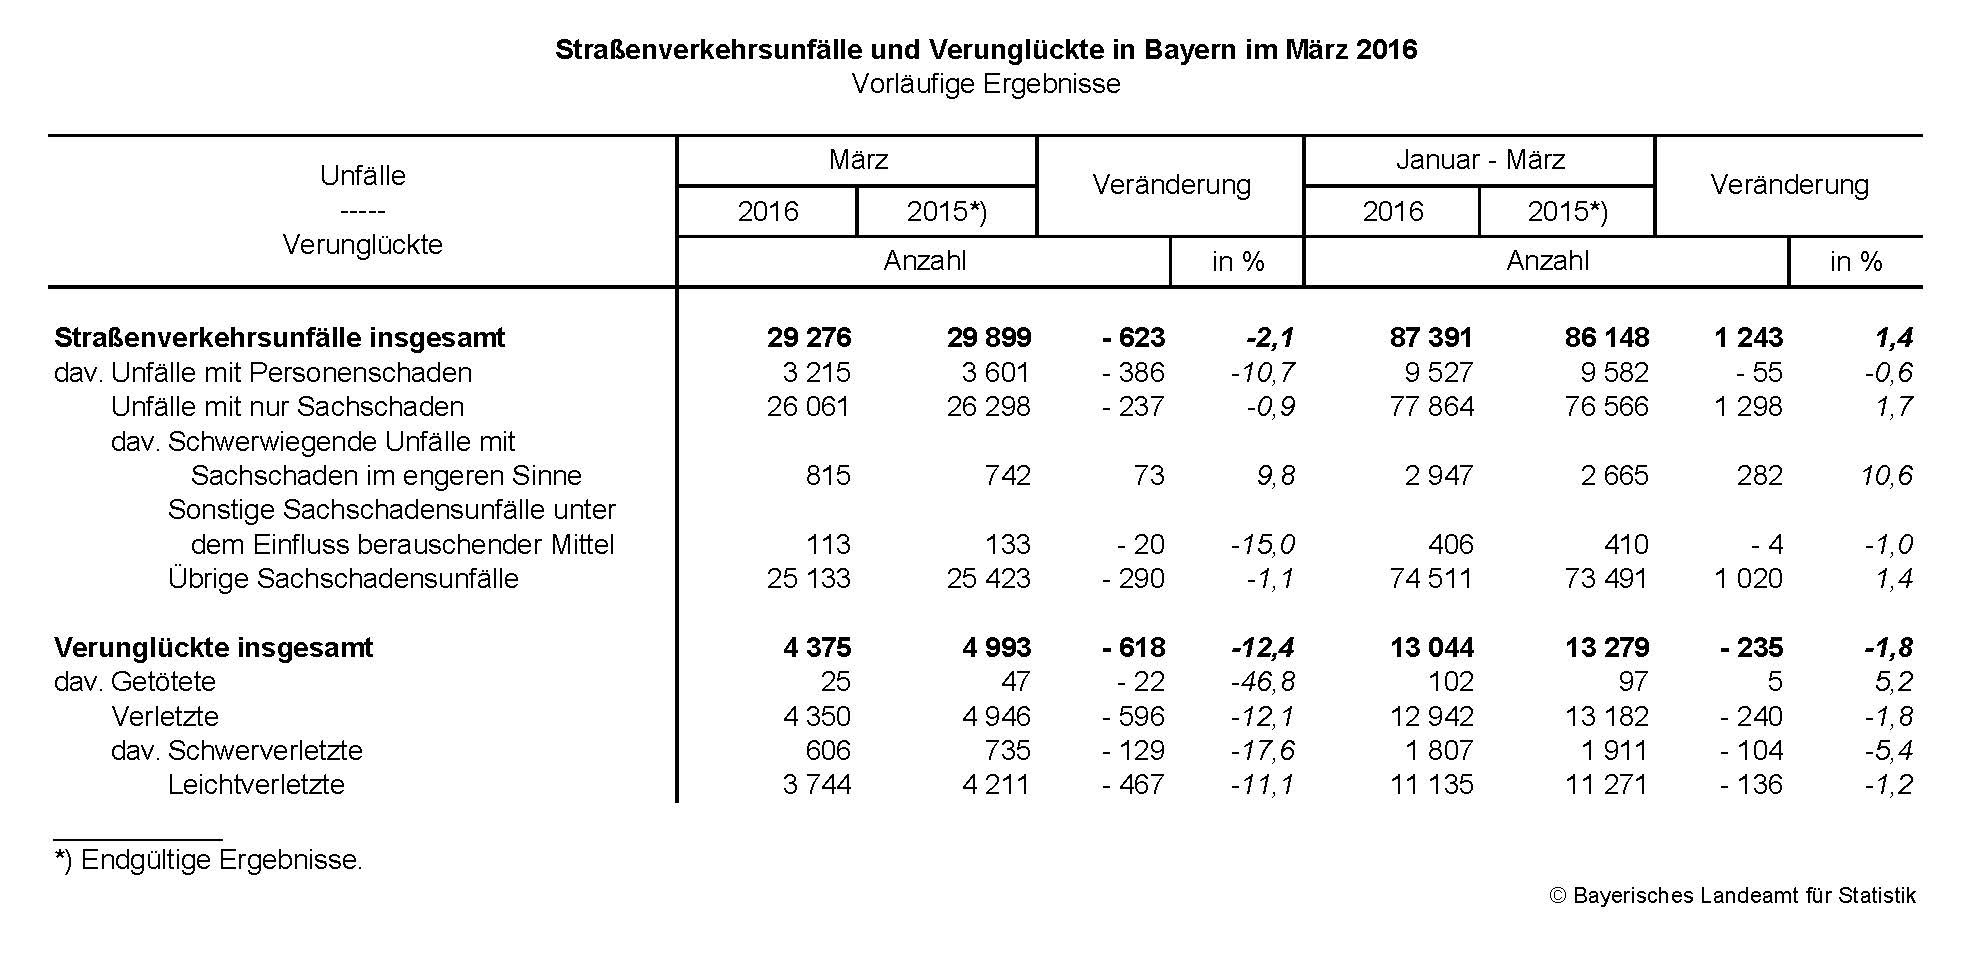 Straßenverkehrsunfälle und Verunglückte in Bayern im März 2016